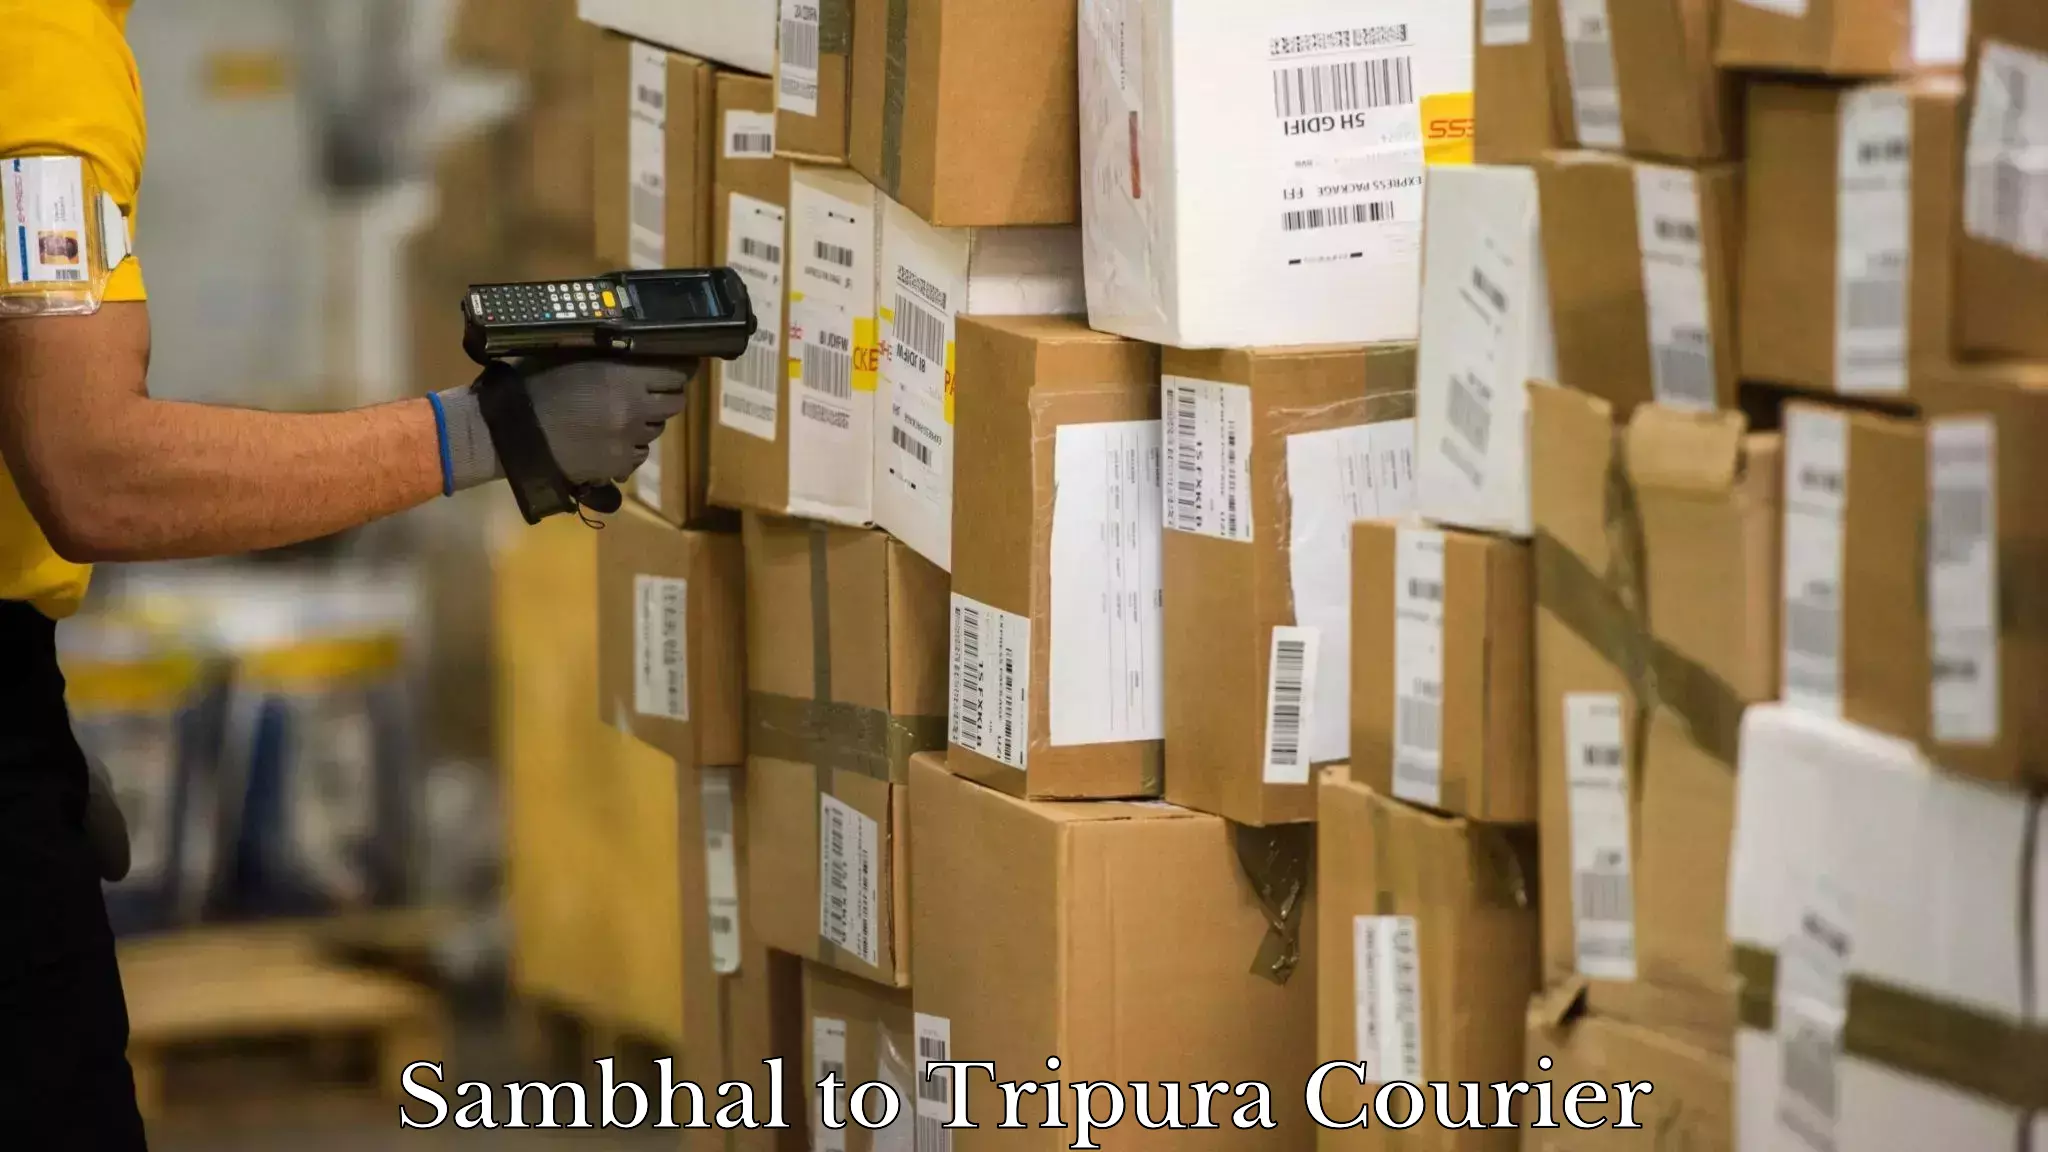 User-friendly courier app Sambhal to Tripura